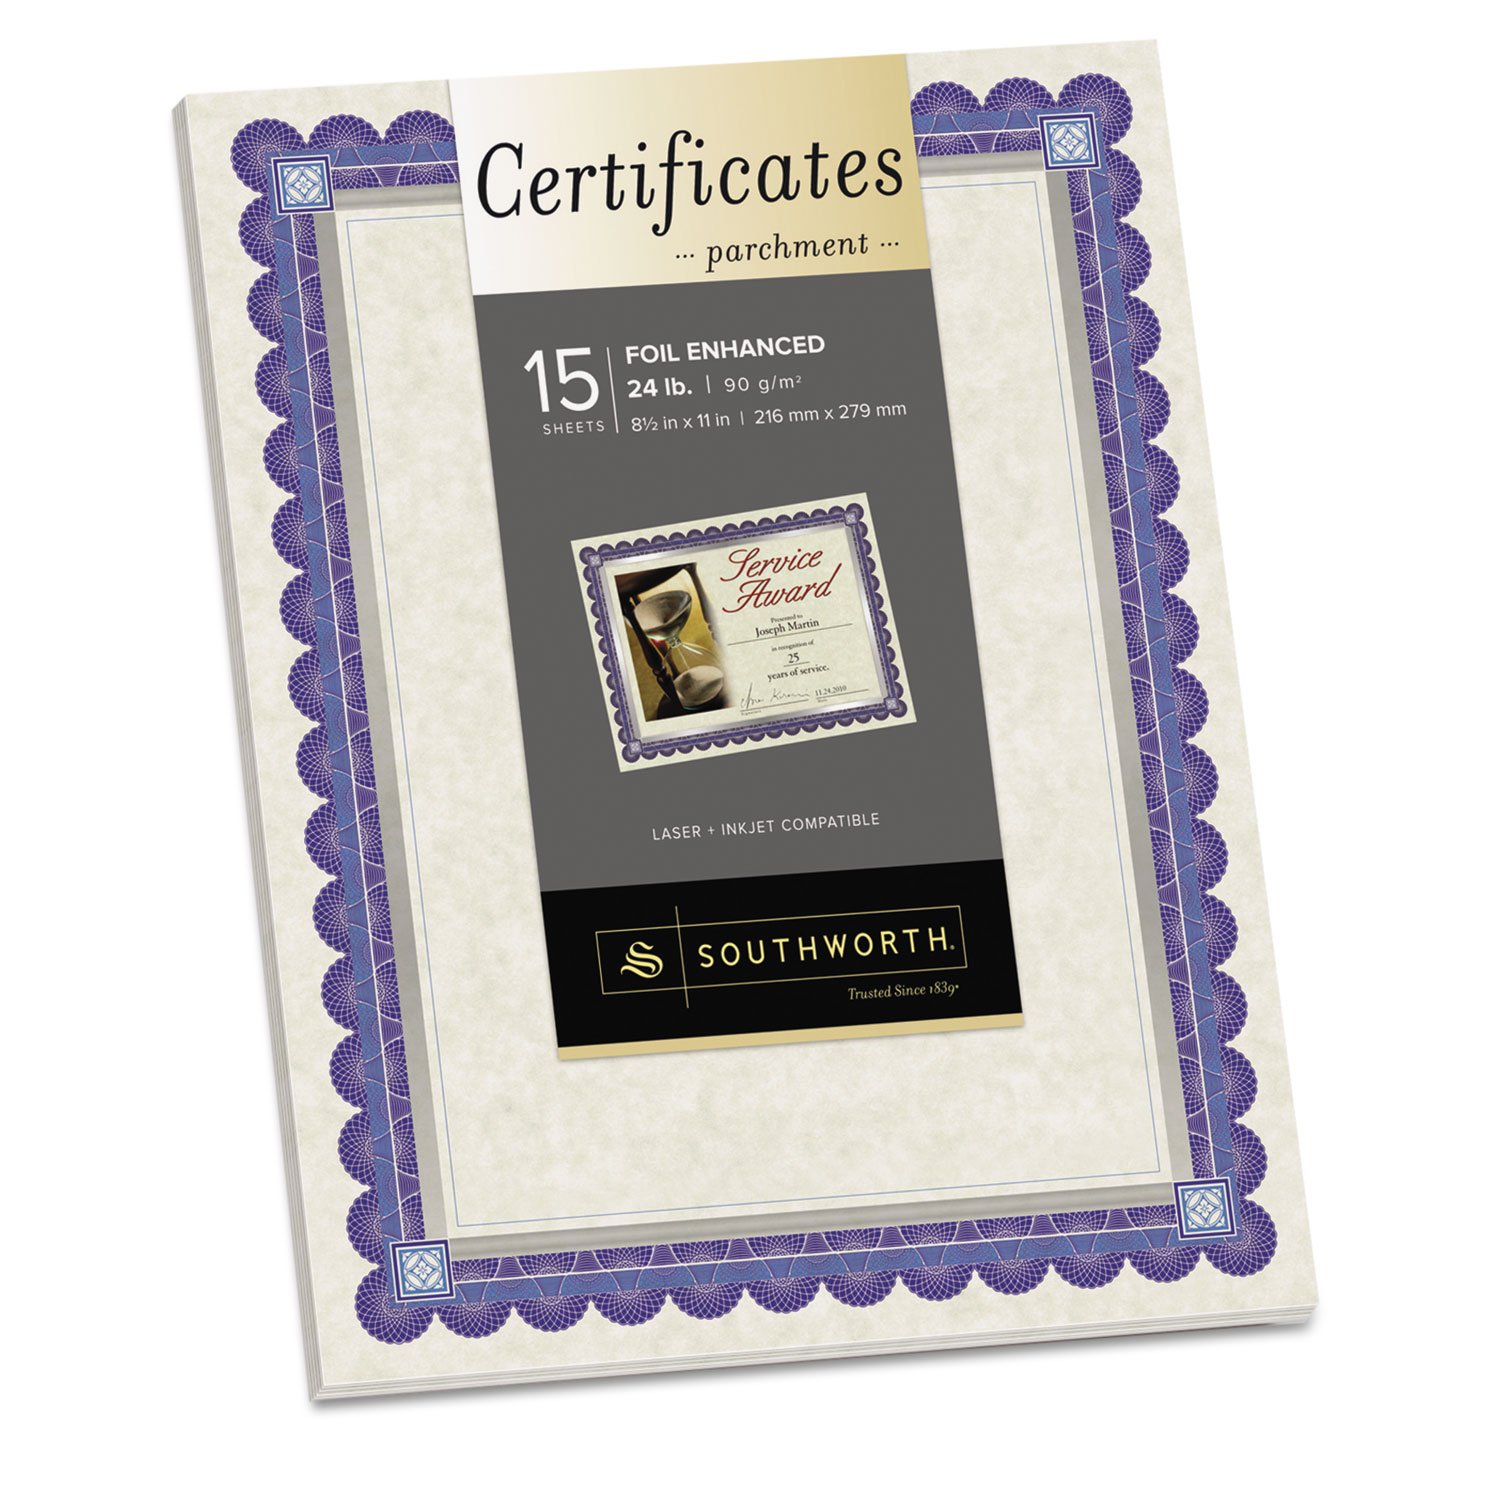 Southworth CT1R Foil-Enhanced Parchment Certificates Ivory/Blue/Silver 24 lb 8.5 x 11 15/Pk